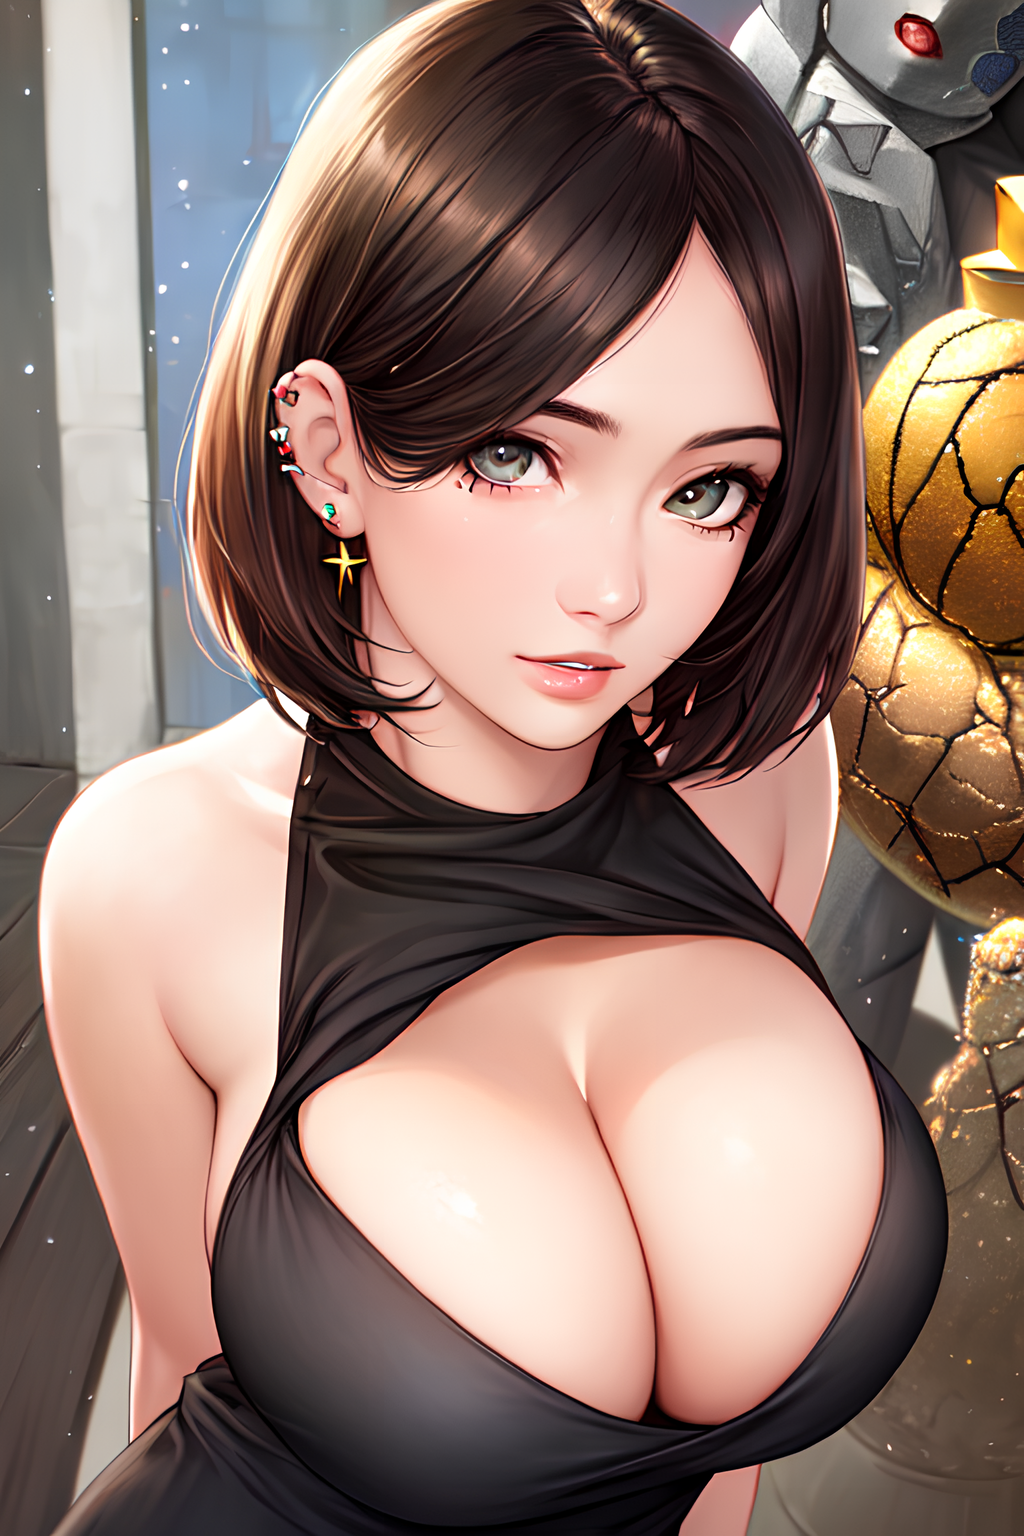 Anime 1024x1536 anime anime girls cleavage big boobs earring brunette Alploo huge breasts AI art